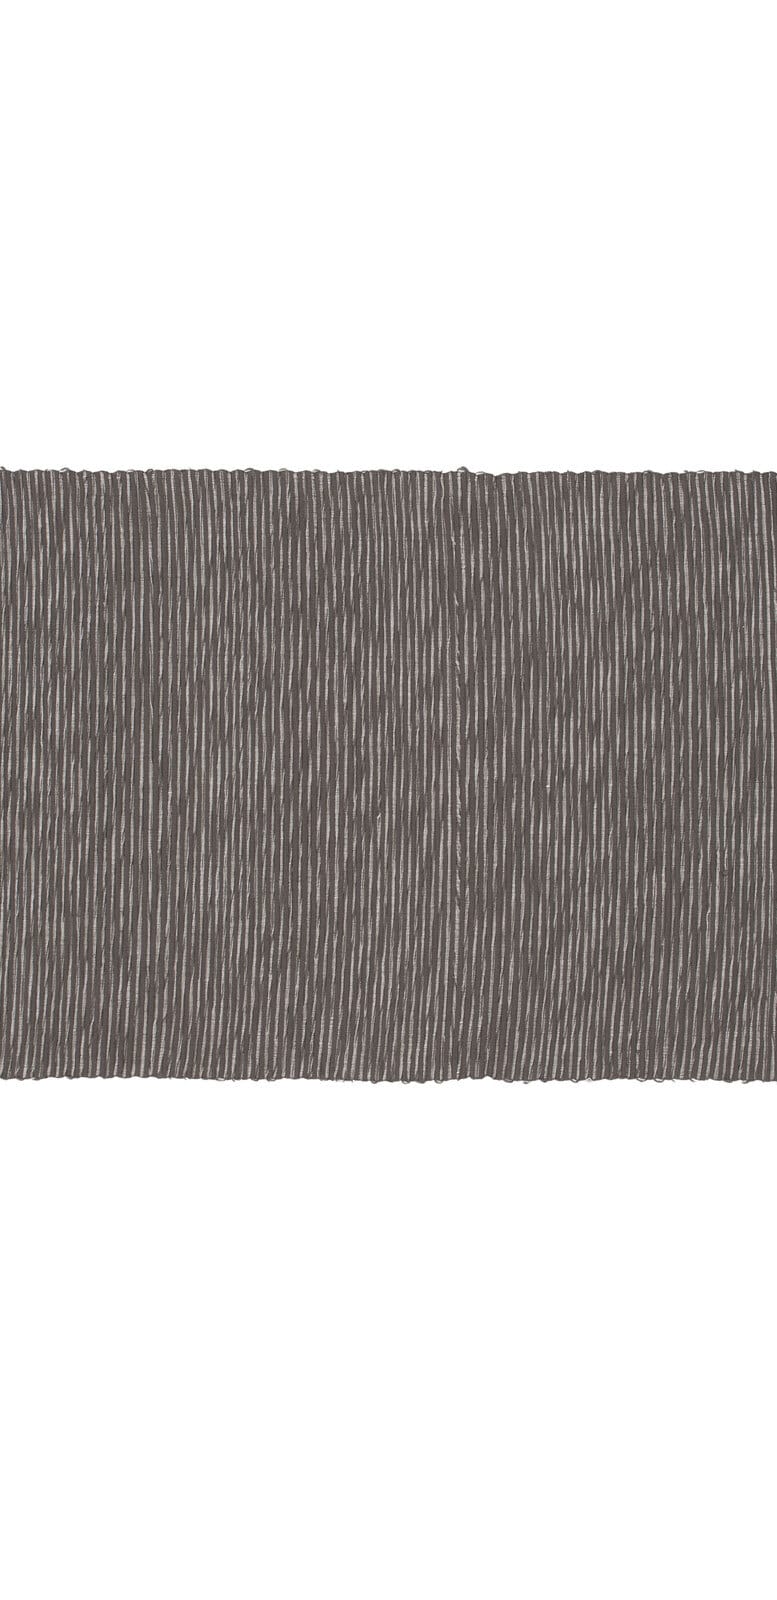 GÖZZE Platzset MERANO 35 x 50 cm grau/schwarz